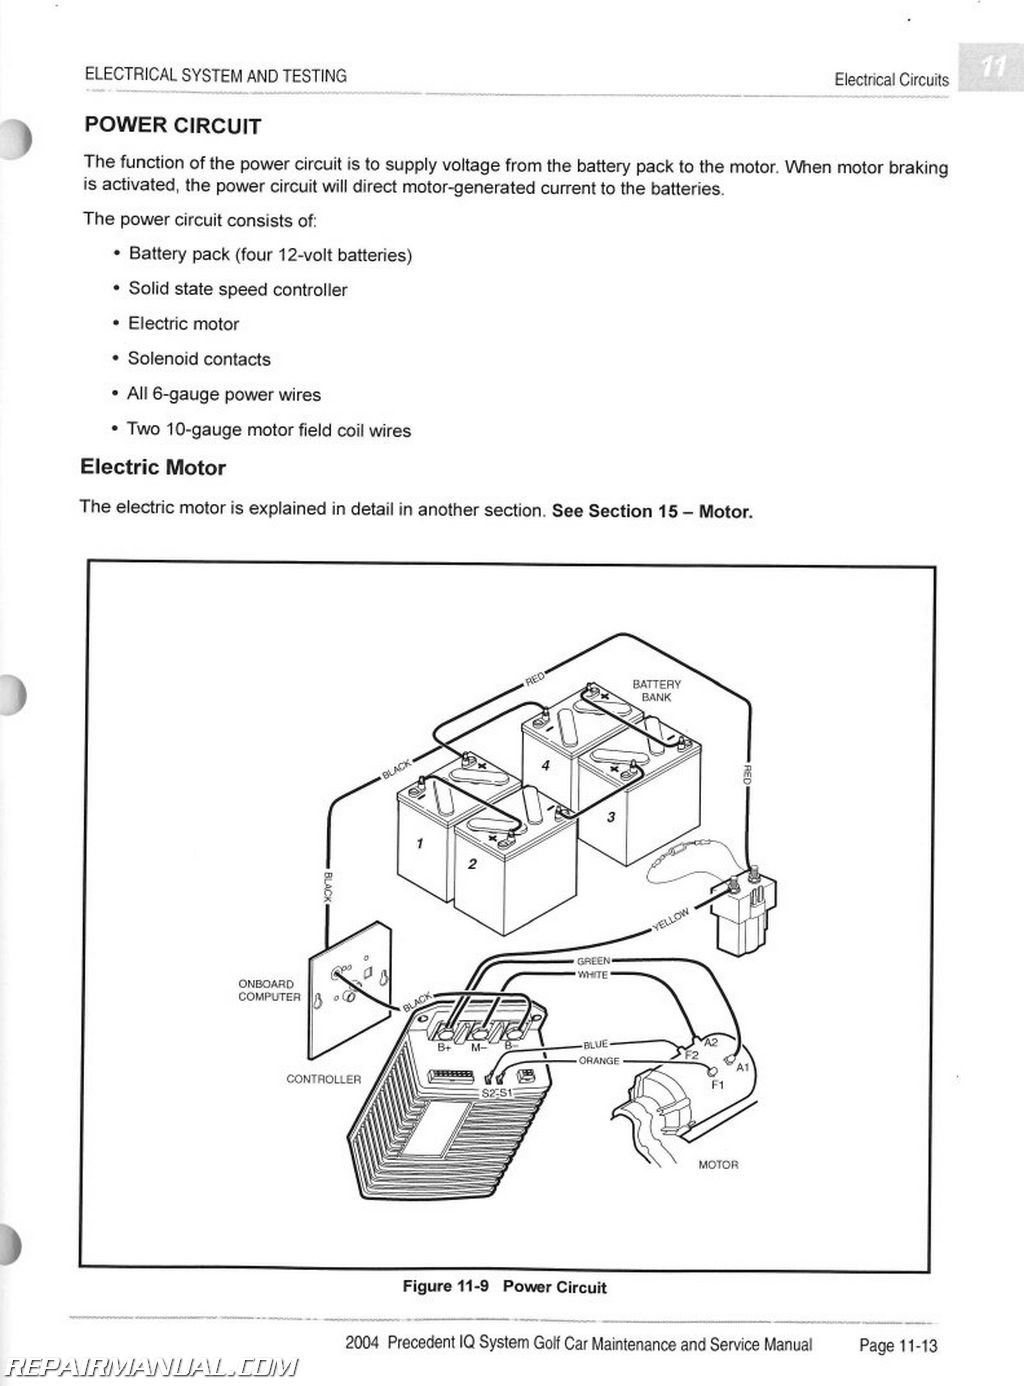 2007 club car precedent wiring diagram